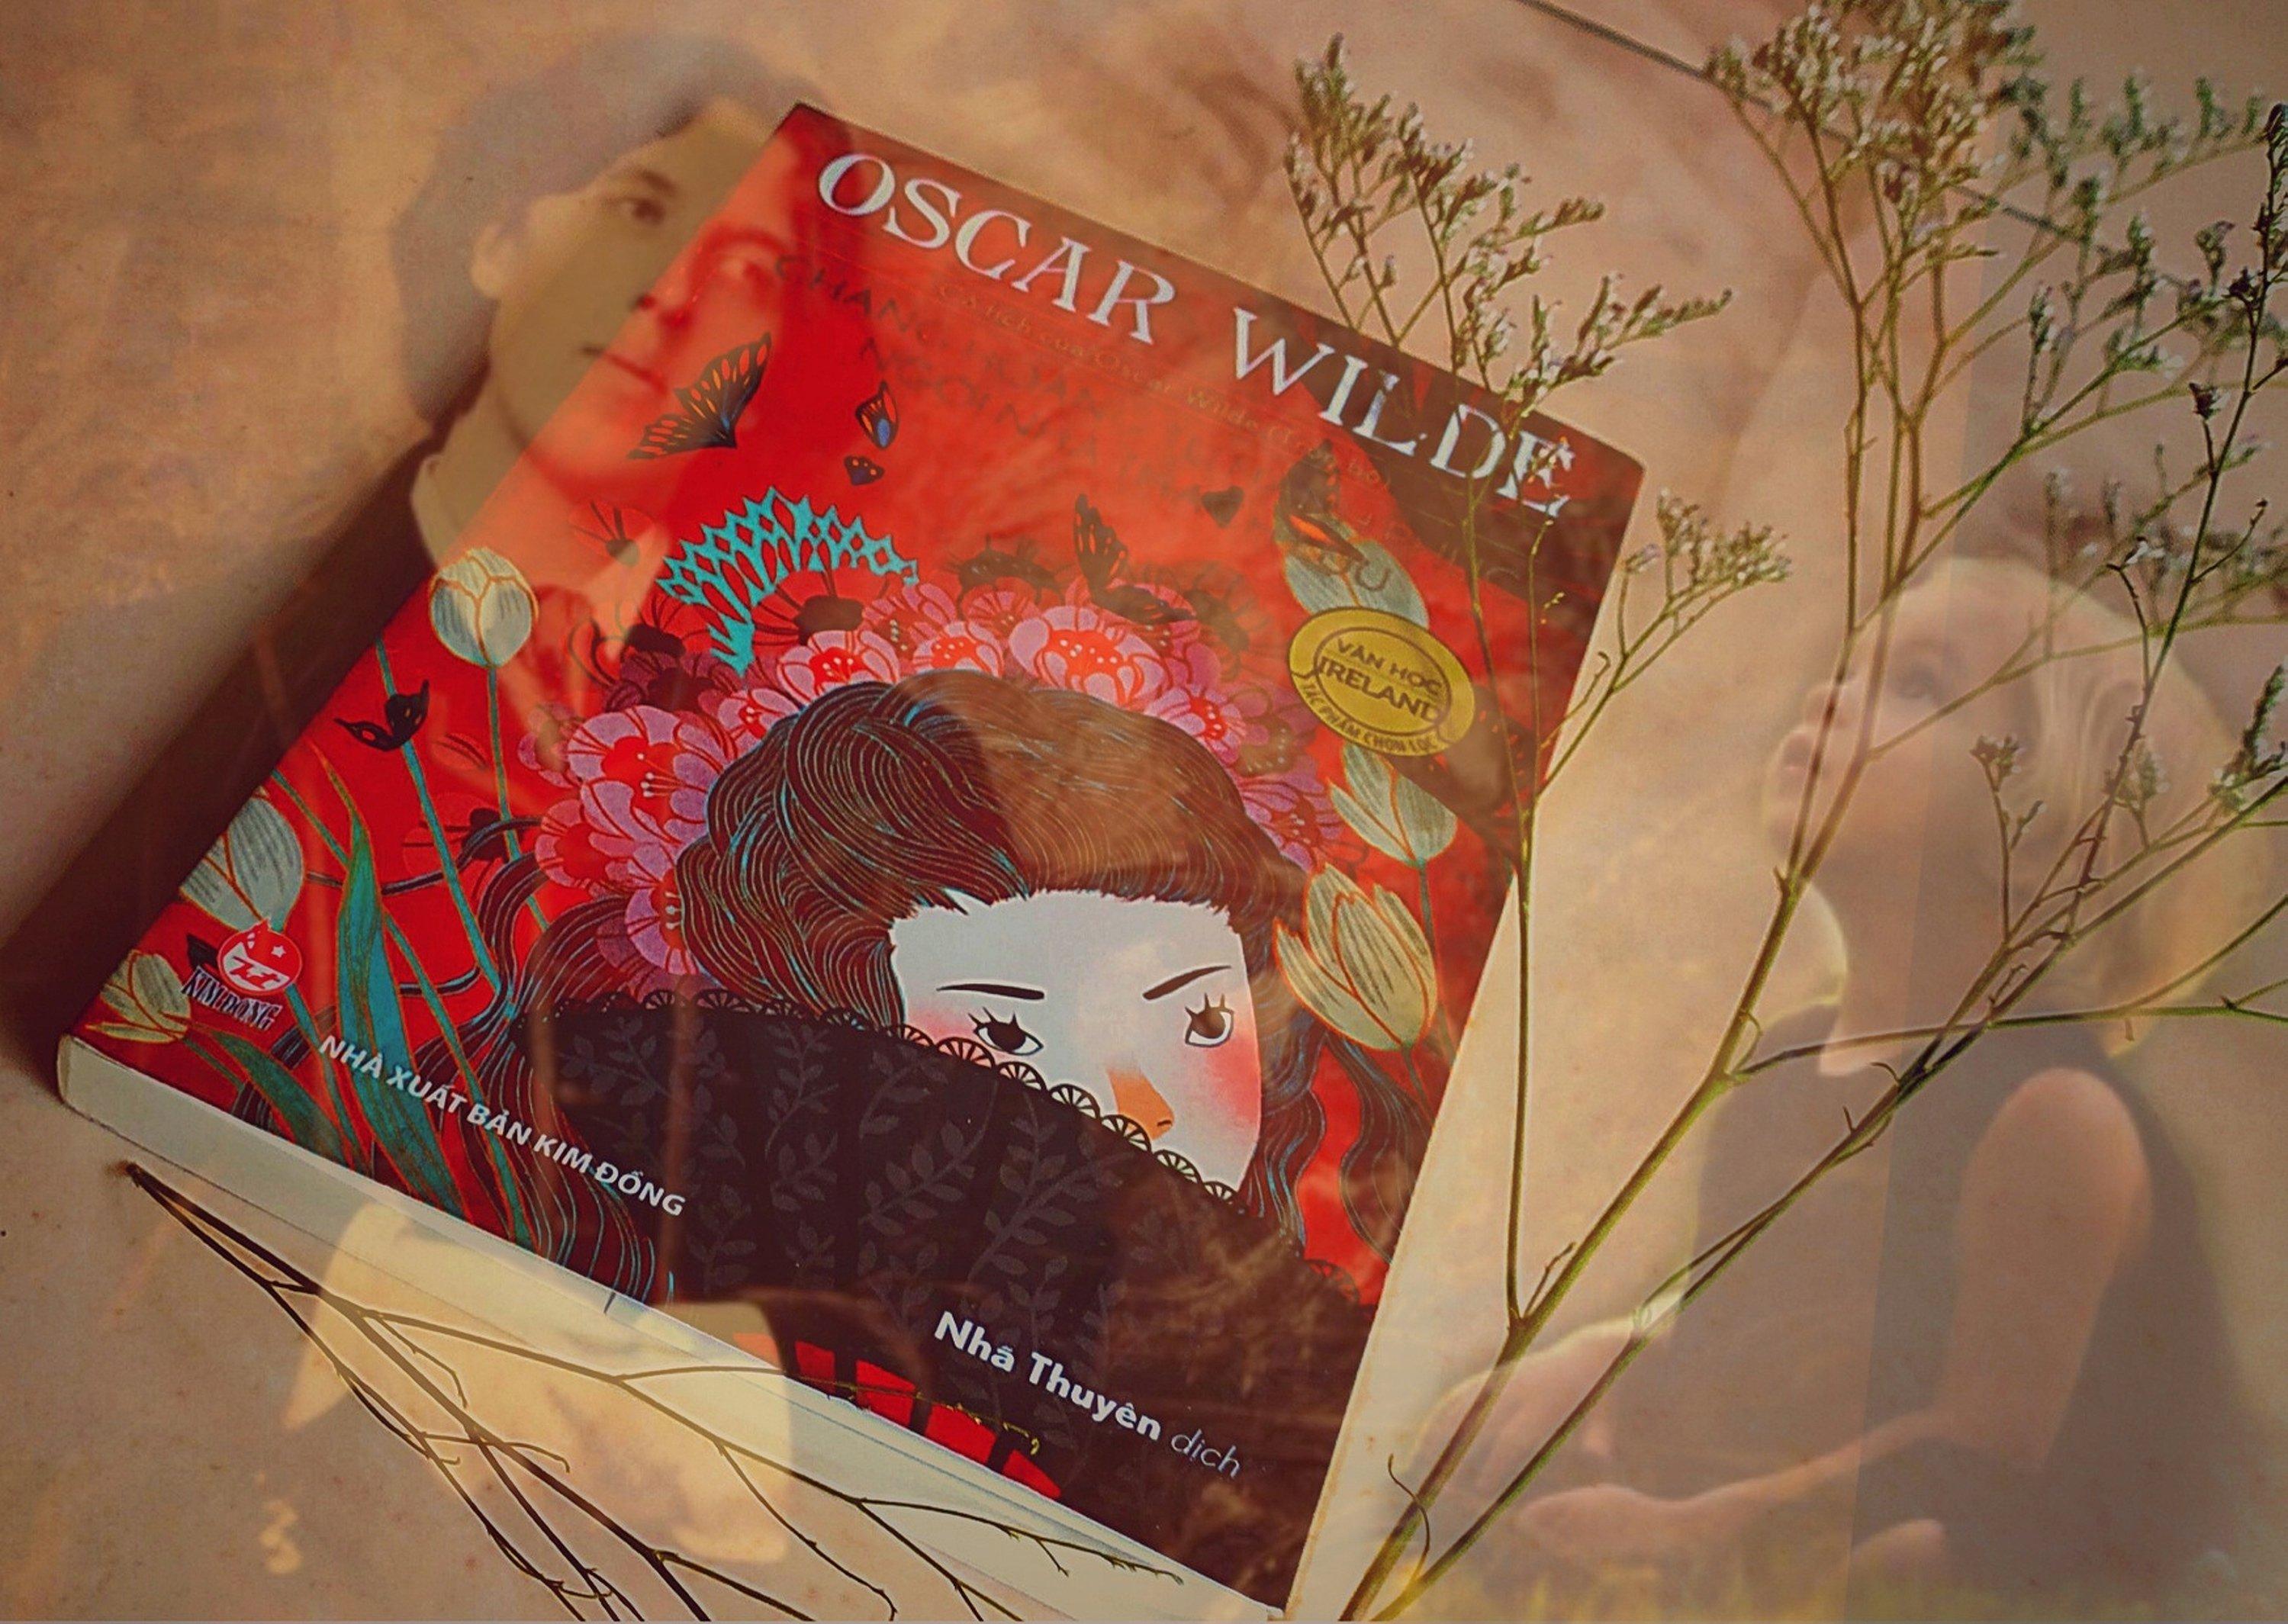 Review truyện Cổ Tích Của Oscar Wilde: Mầm tình yêu cho trẻ em